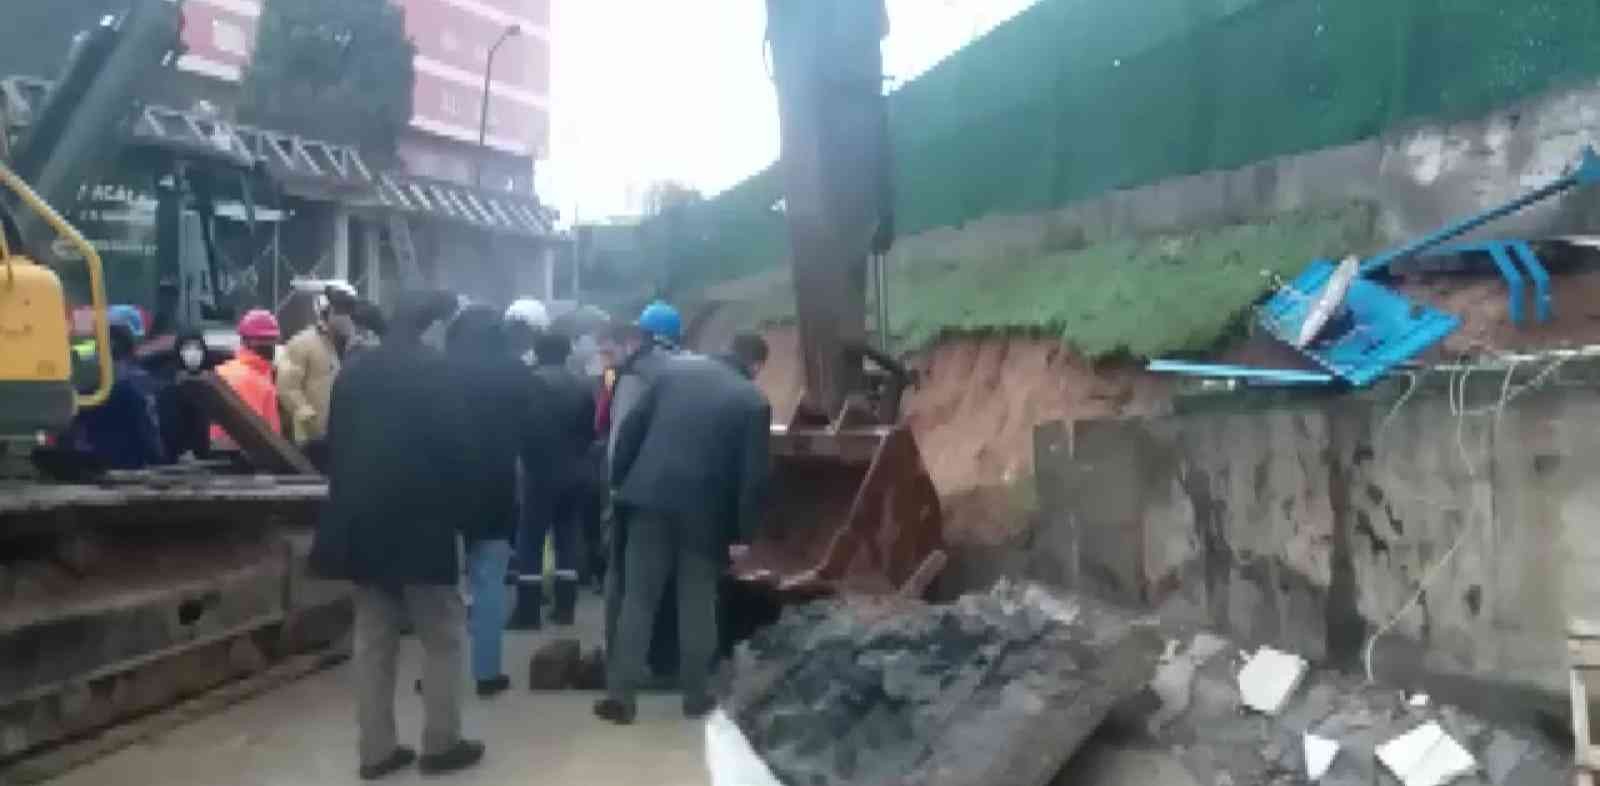 Tuzla’da bir inşaatta yapılan çalışma sırasında istinat duvarı çöktü. Bir işçi çöken duvarın altında kaldı. Duvar altında kalan işçiyi kurtarmak için çalışma başlatıldı. #istanbul